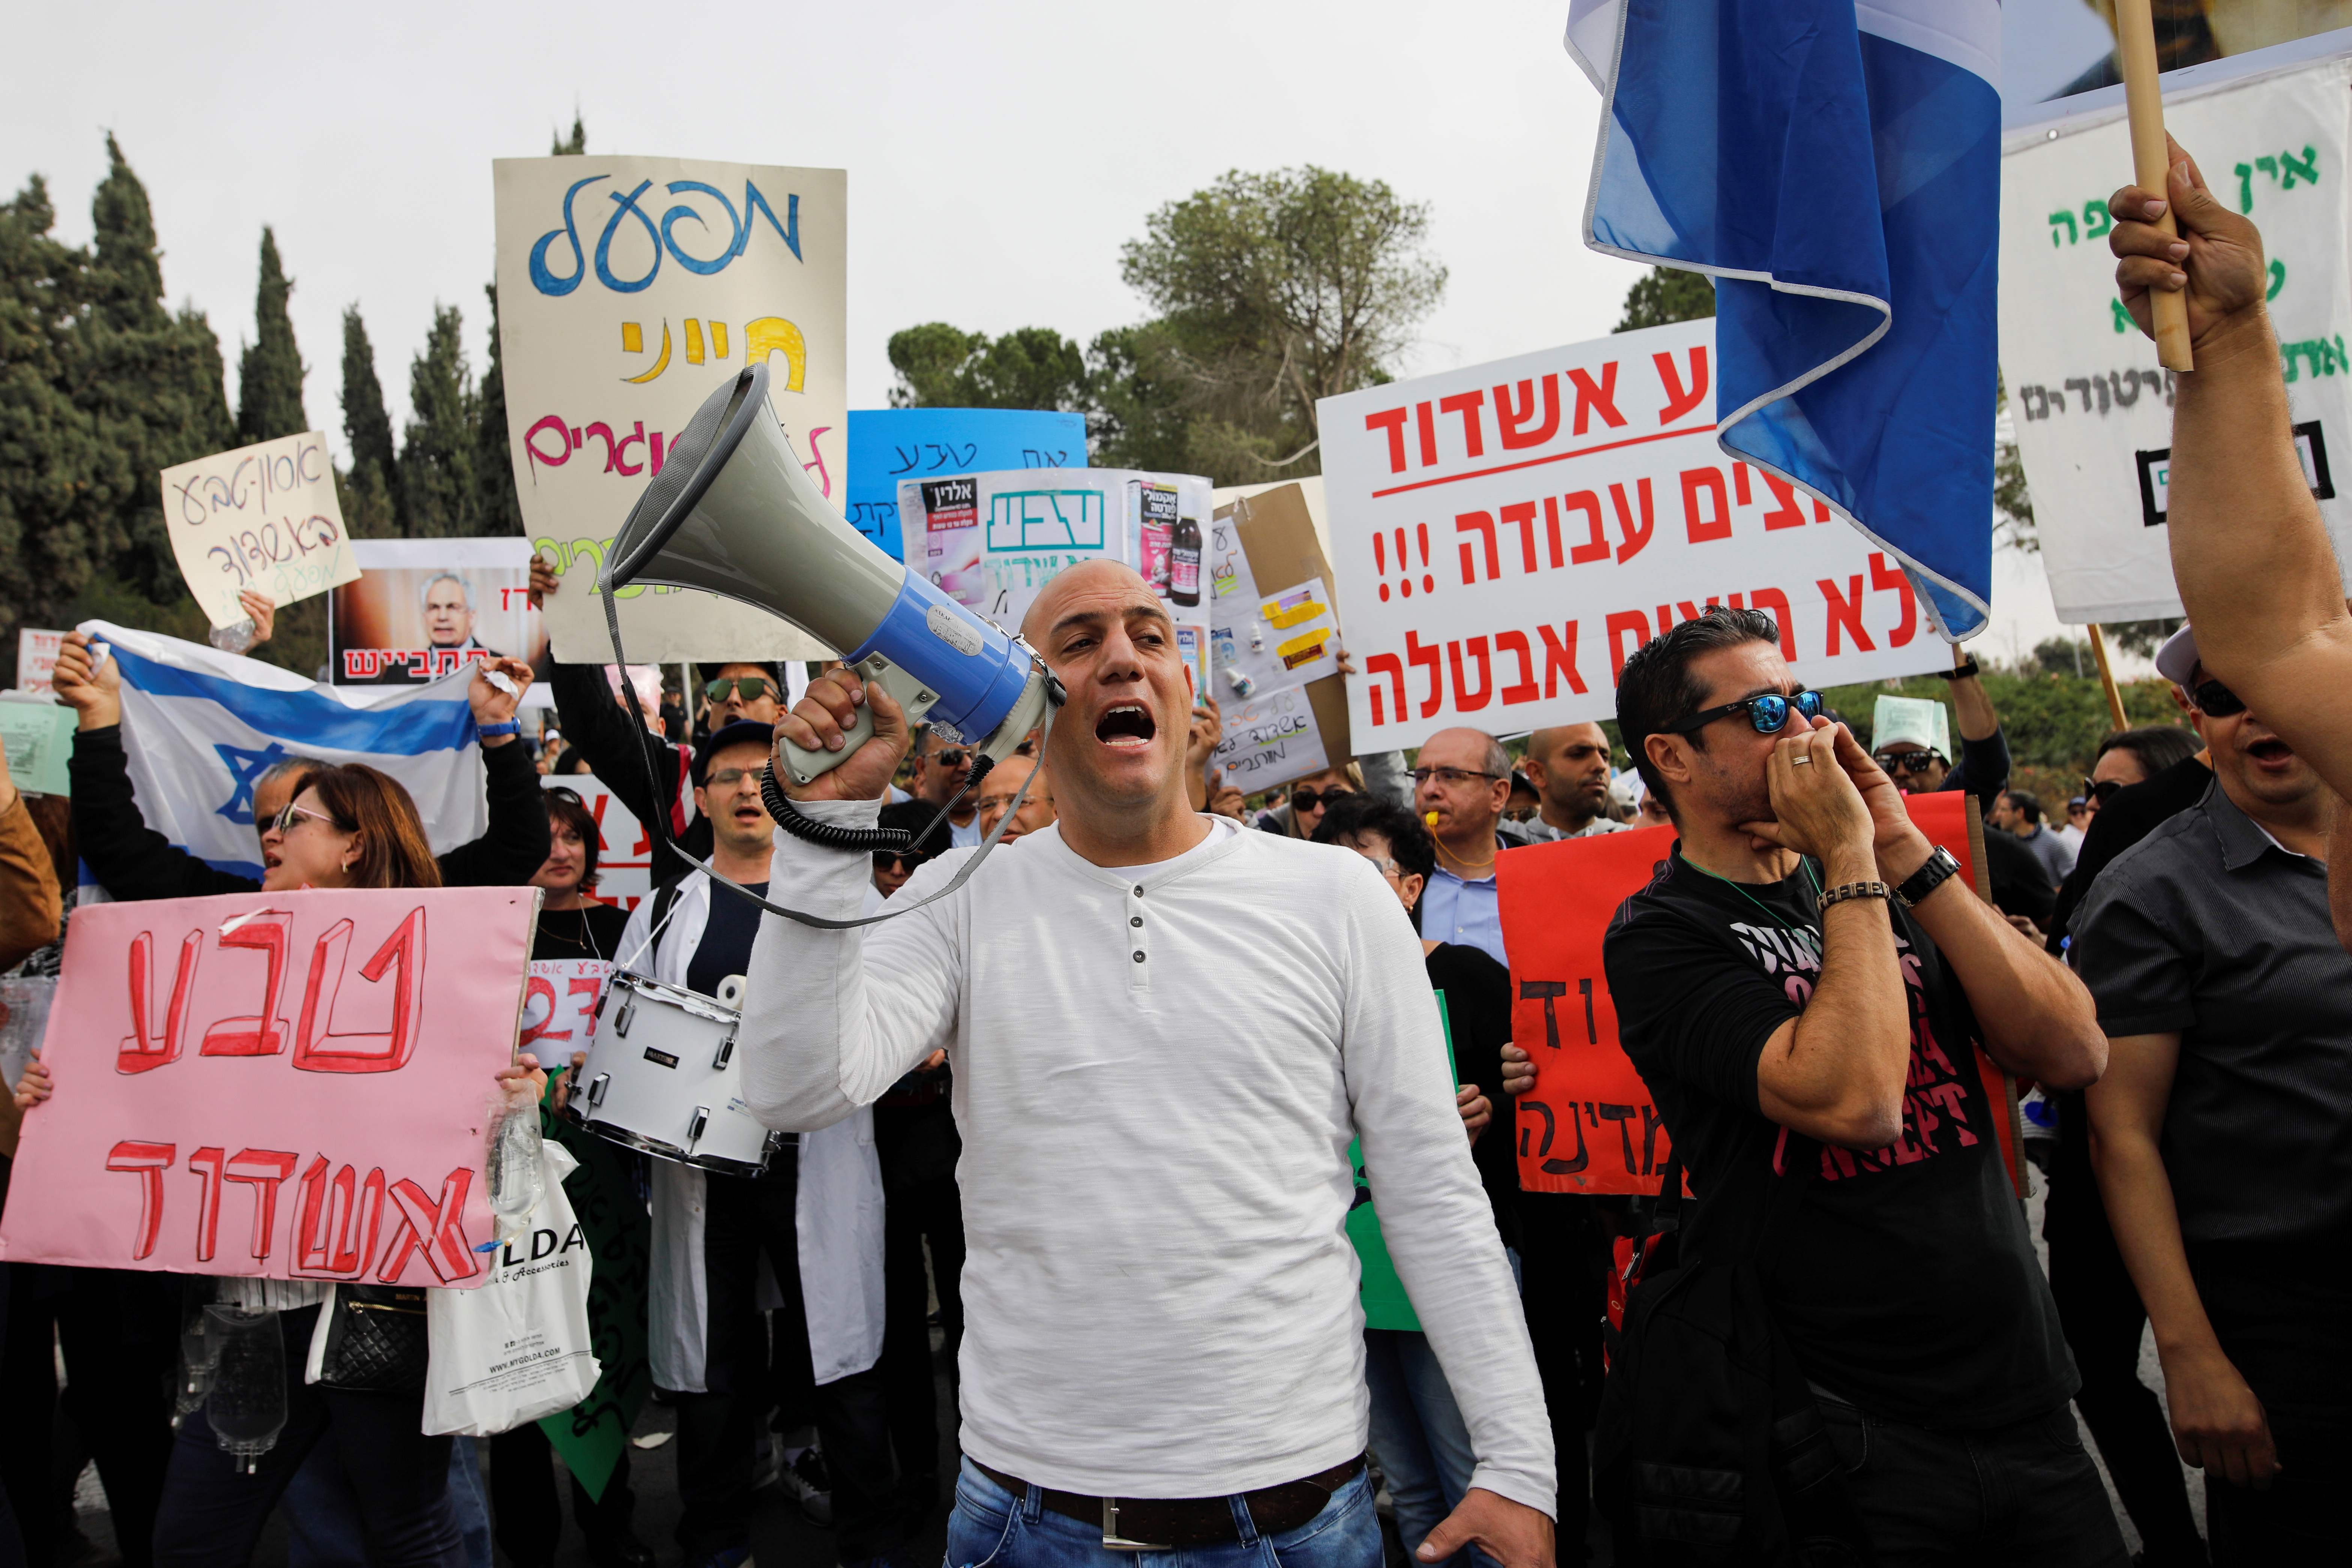 آلاف الاسرائيلين يحتجون على خطة تسريحهم